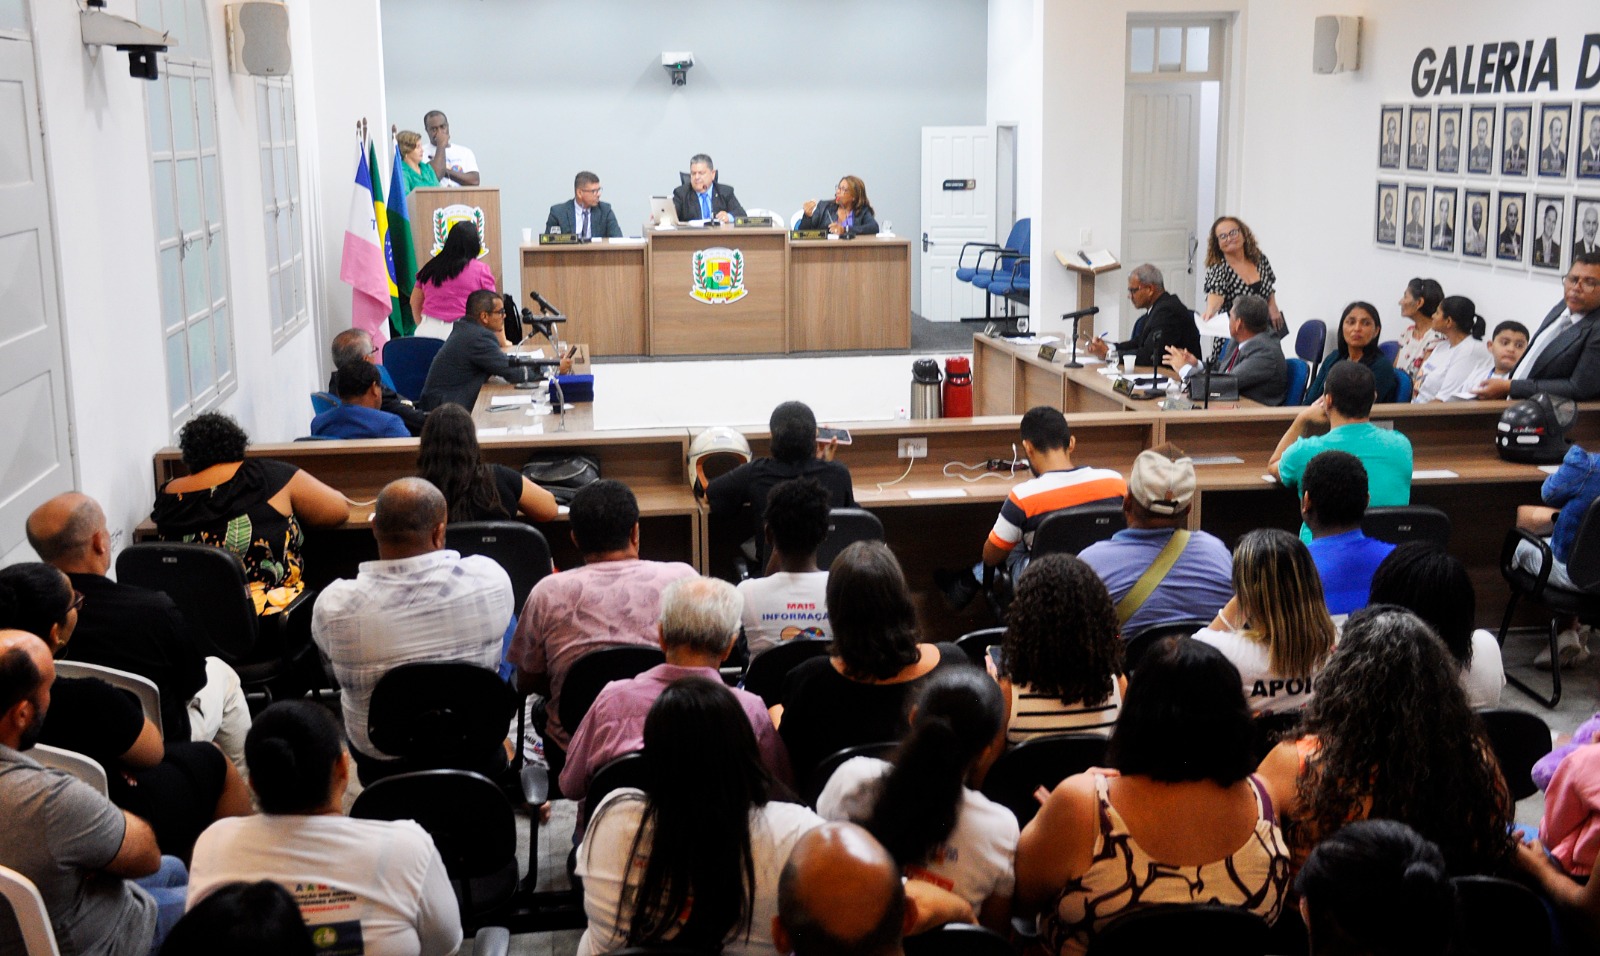 NOTÍCIA: Falta de atendimento adequado a autistas domina debates na Câmara de São Mateus